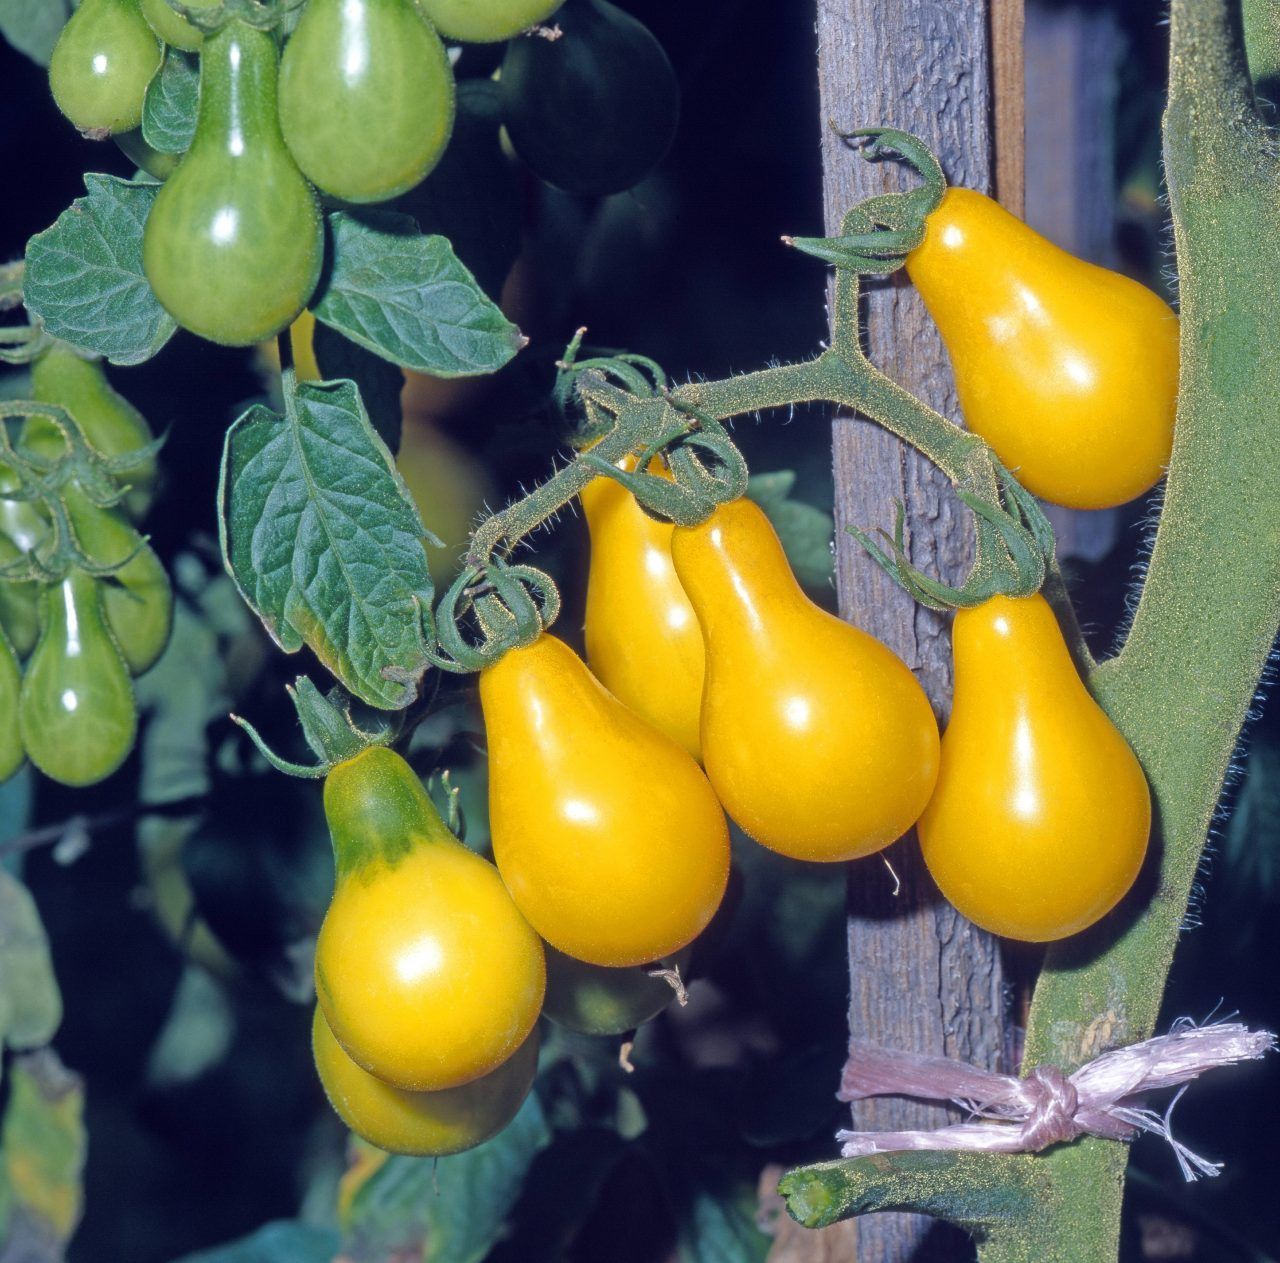 Diese Sorte ist auch als "Yellow Pearshaped" bekannt. Die ungewöhnliche Form, die gelbe Farbe und der süße Geschmack machen die peruanische Tomate zum Hingucker.